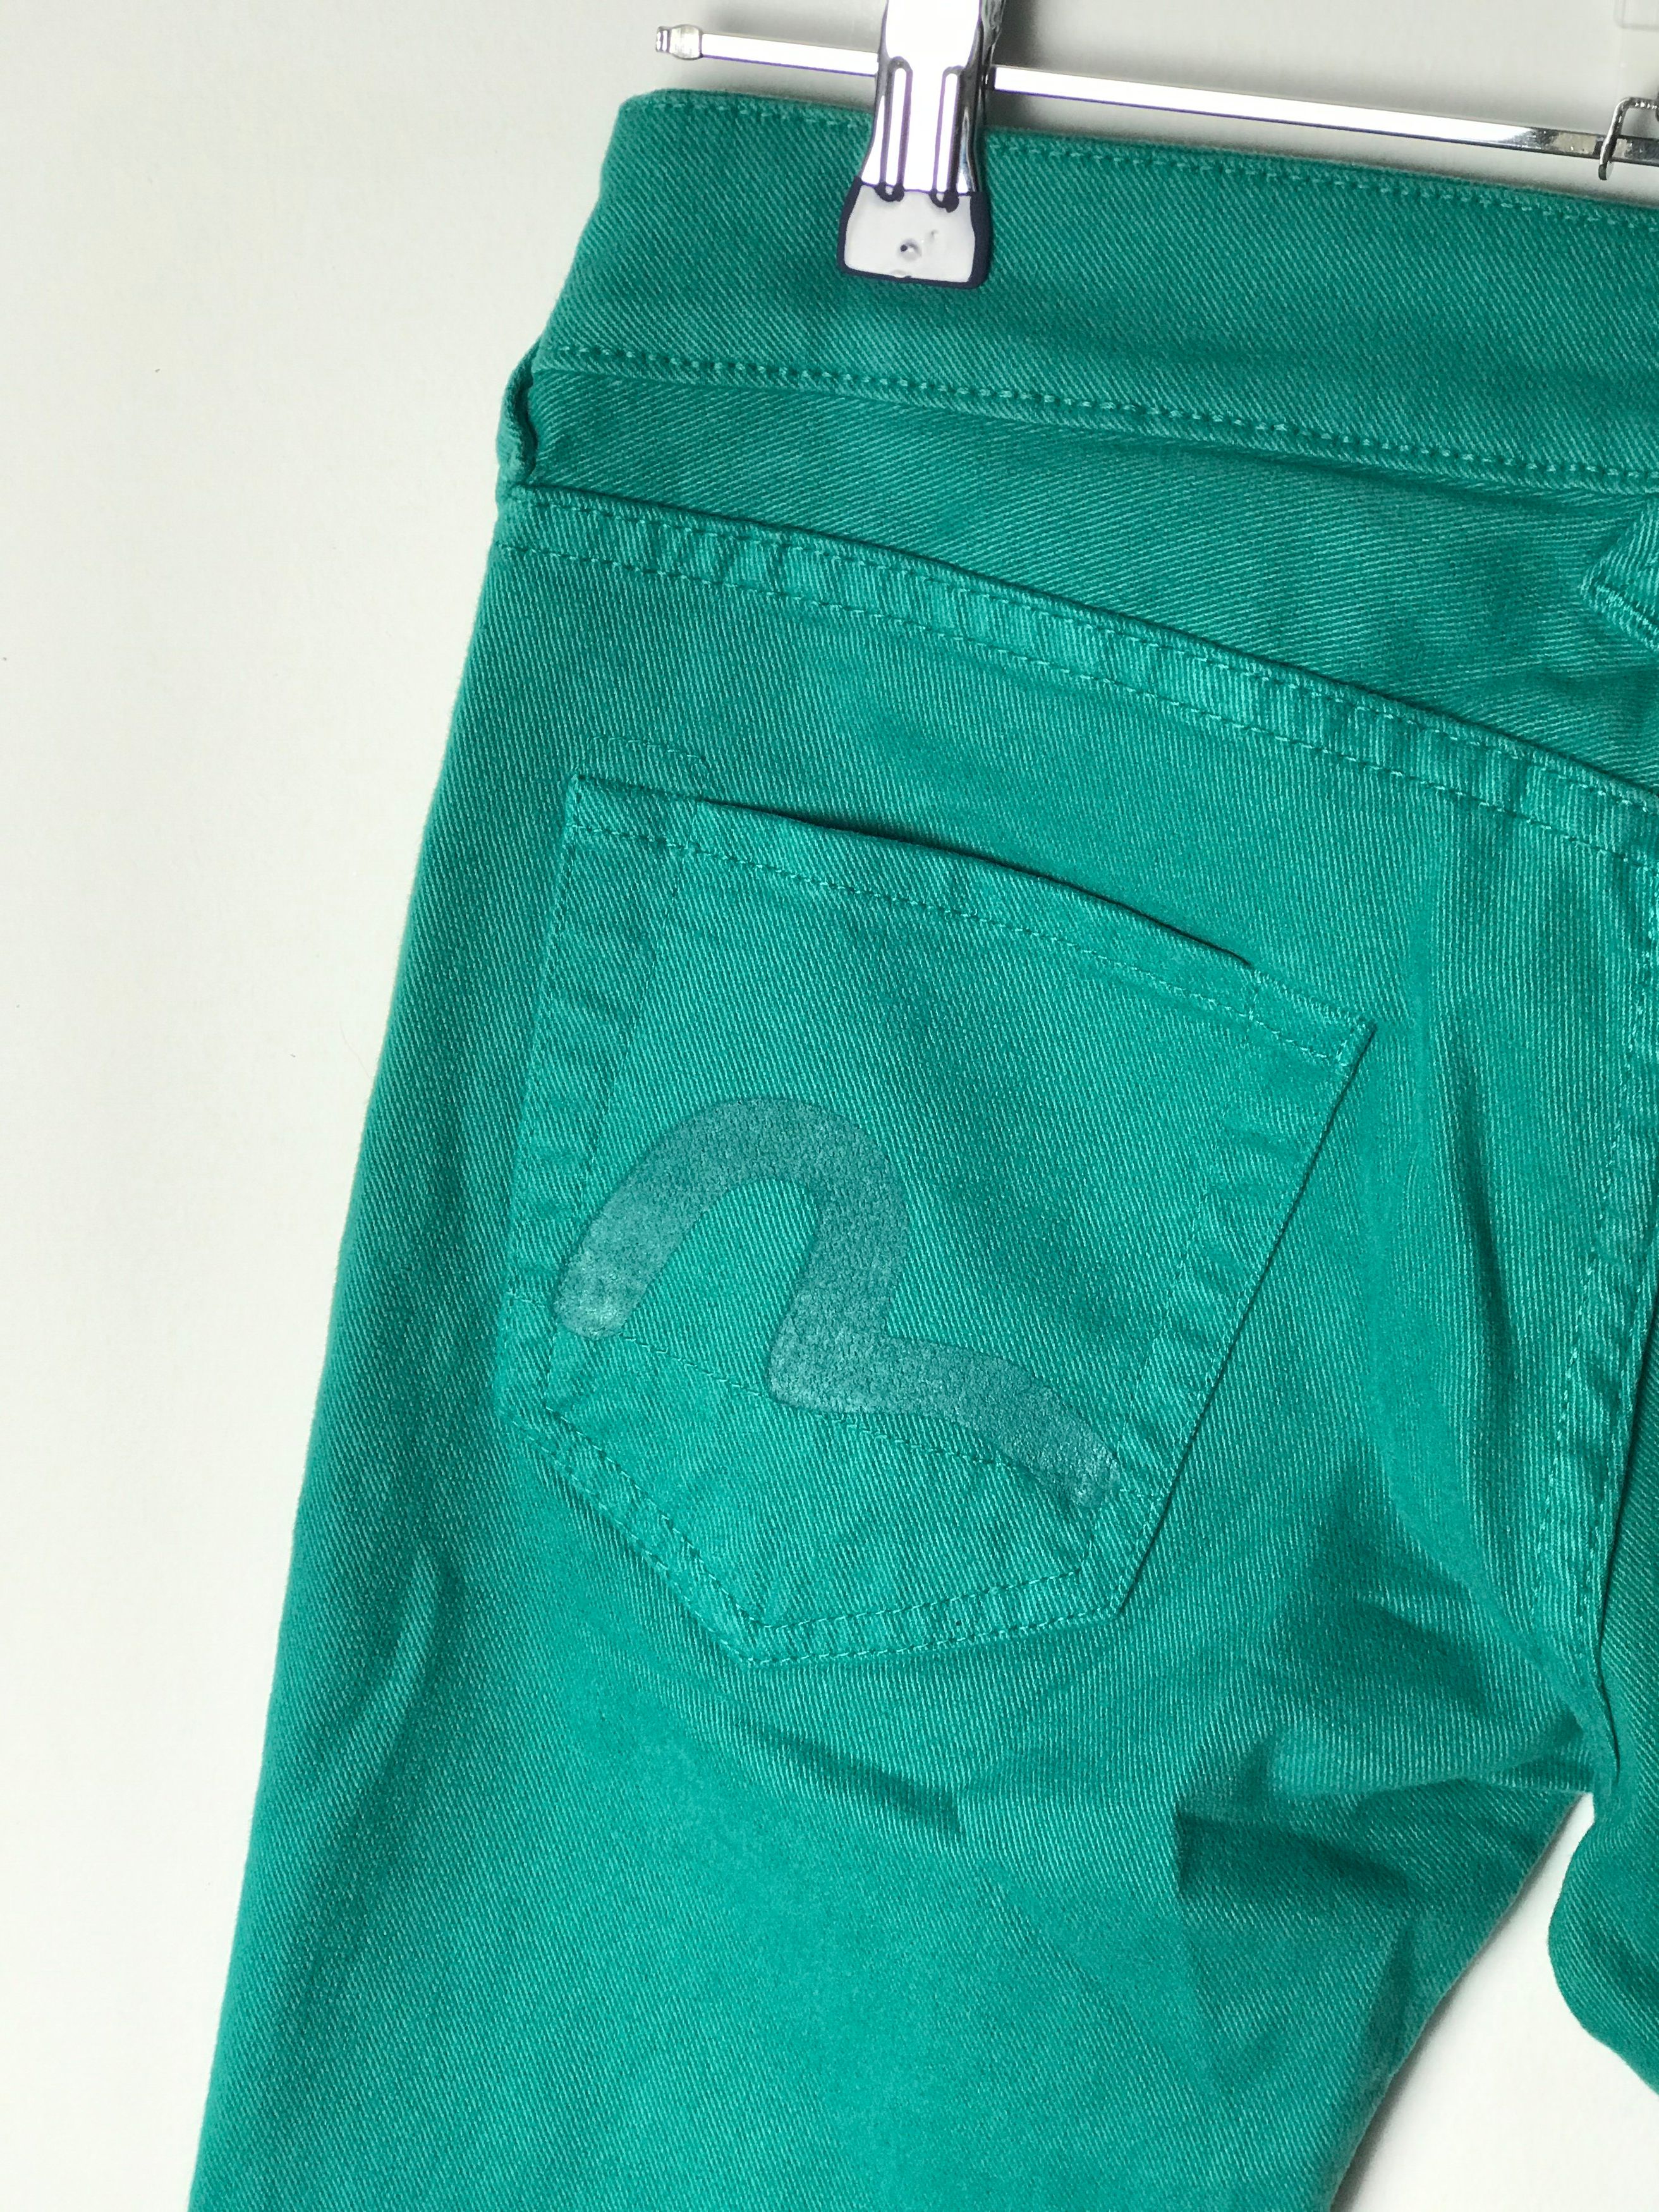 Vintage WMNS Evisu jeans pants DSWT Size US 28 / EU 44 - 8 Thumbnail